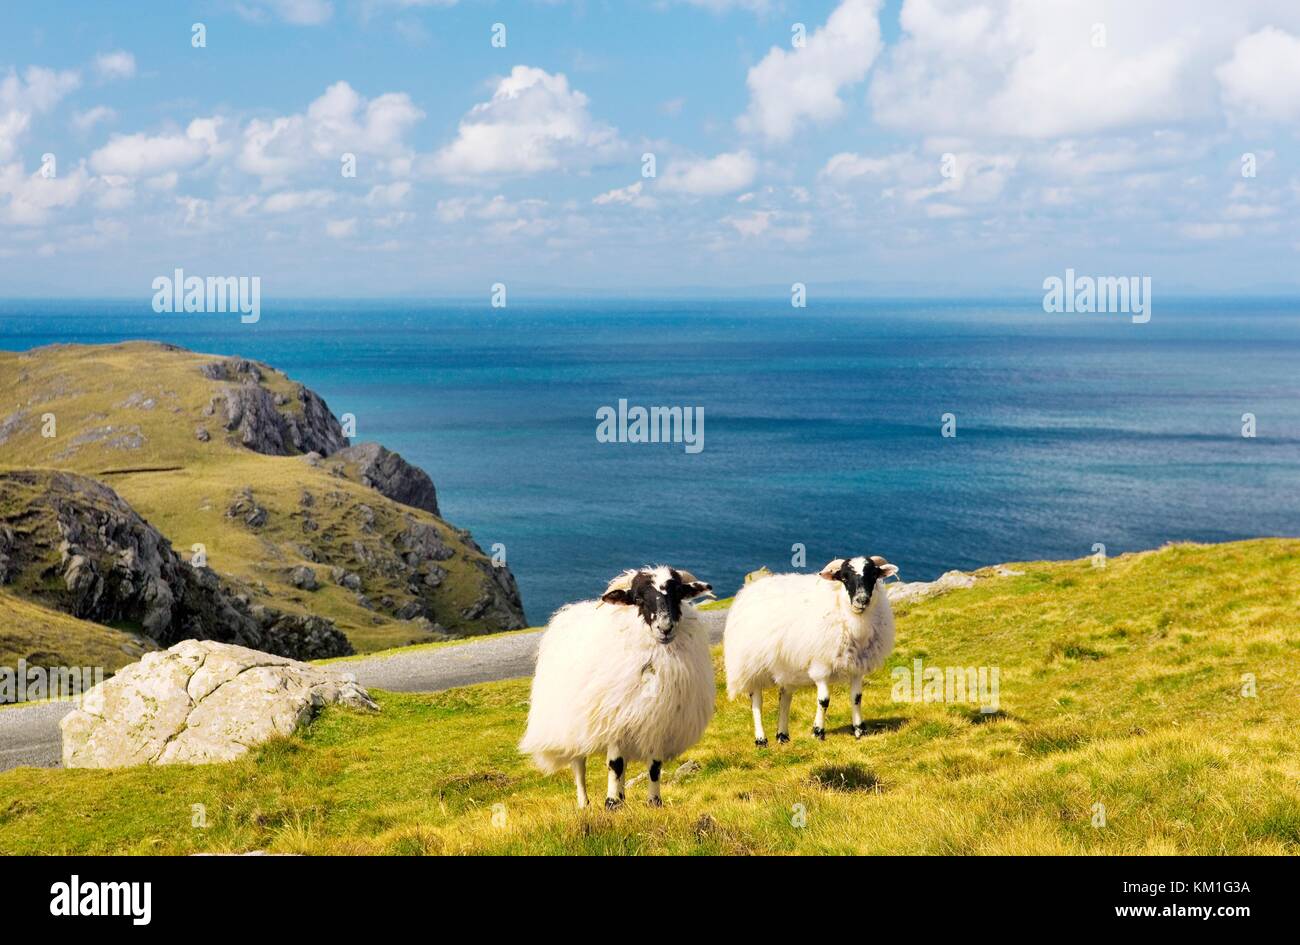 Schafe grasen, hoch über dem Atlantik in den Slieve League Cliffs im Westen von killybegs im Südwesten Donegal. Irland. Stockfoto